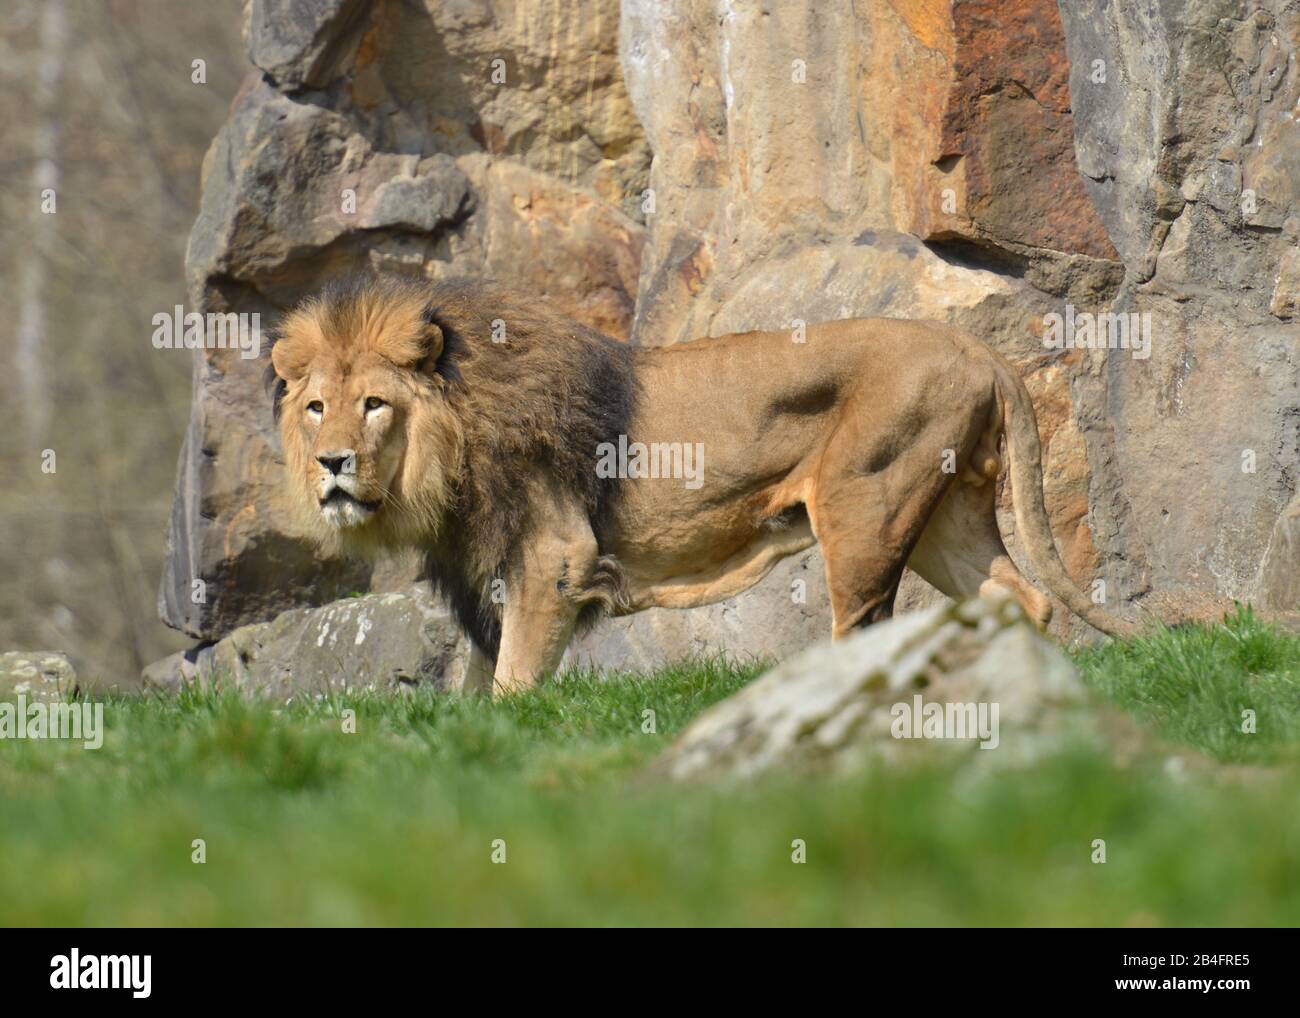 Afrikanischer Loewe (Panthera leo), Zoologischer Garten, Tiergarten, Berlin Stock Photo